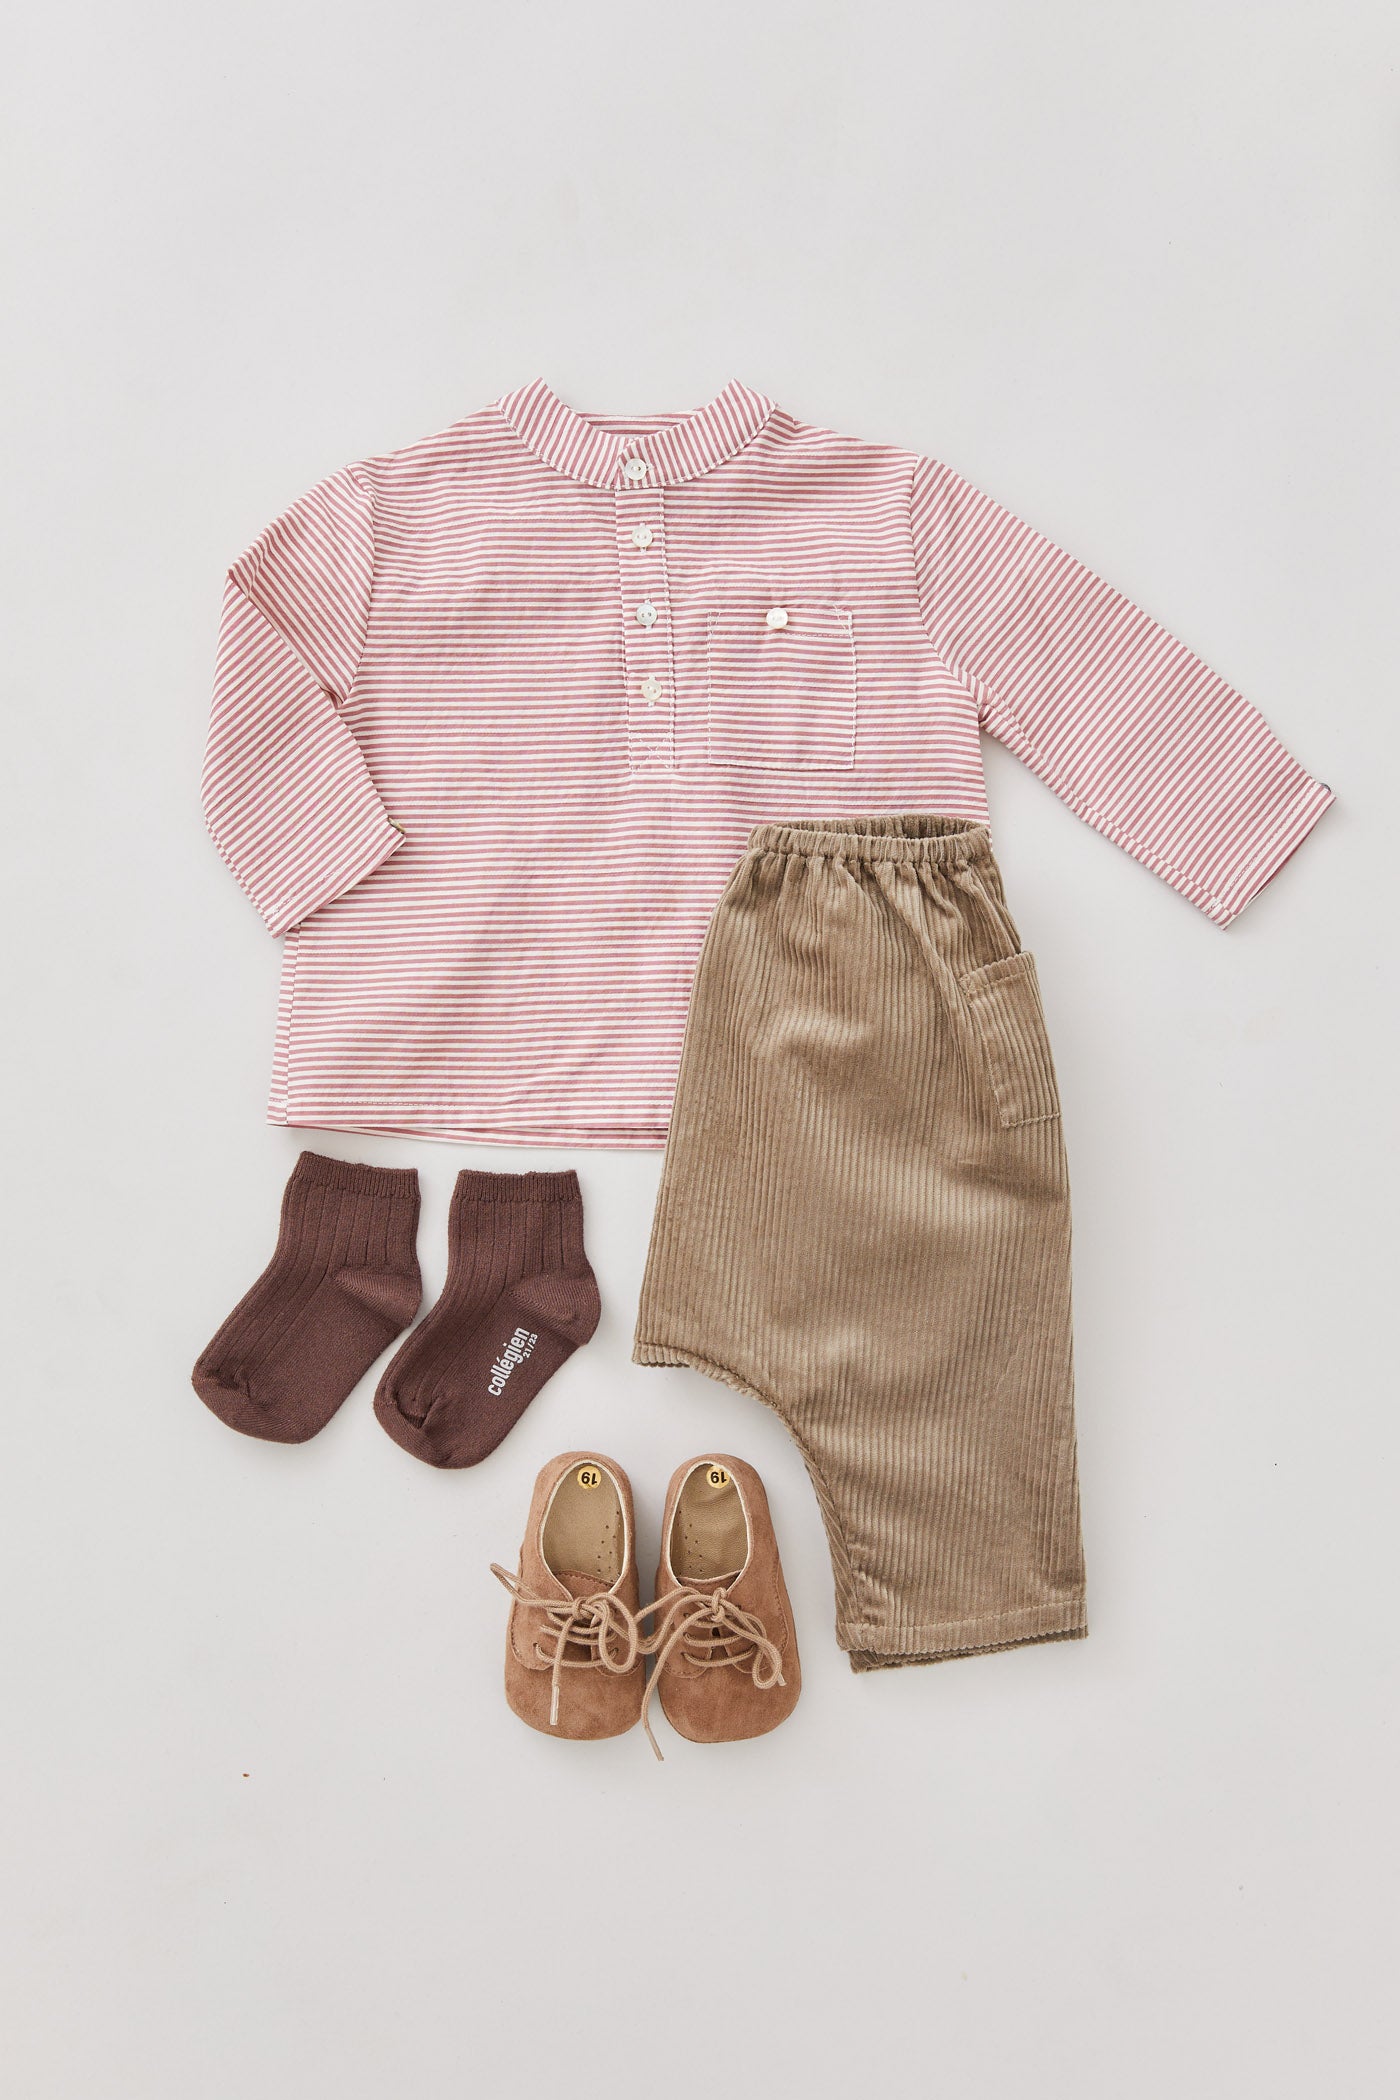 Baby Apple Trousers Brown Corduroy - Designed by Ingrid Lewis - Strawberries & Cream